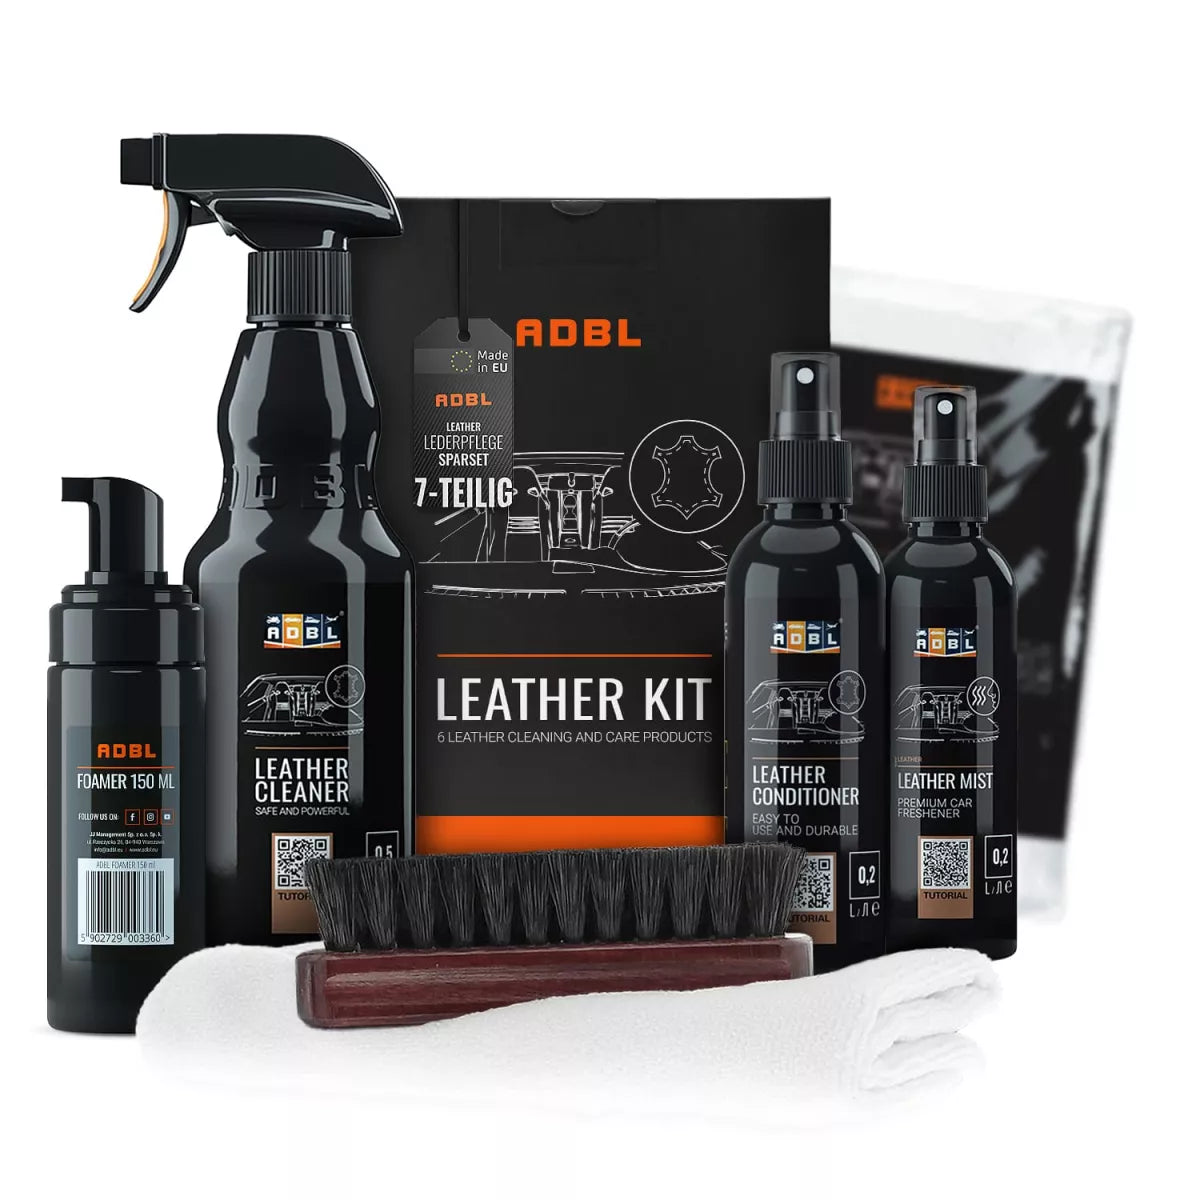 ADBL Leather Kit Lederpflege-Set -1580